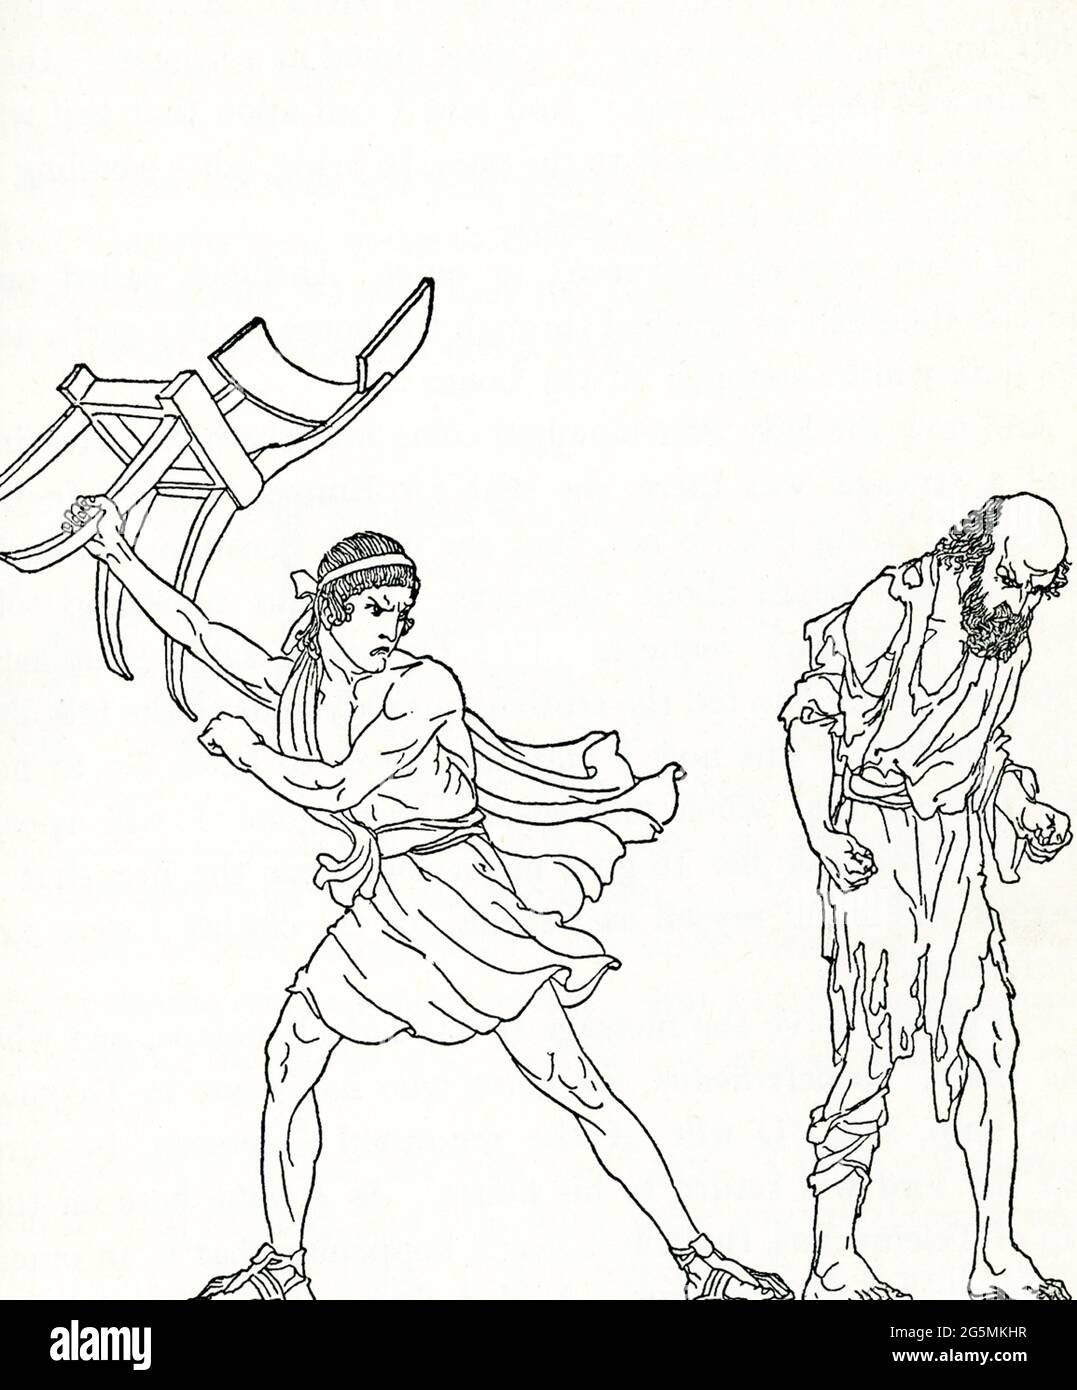 Dieses Bild zeigt die Rückkehr des Odysseus. Nach der griechischen Legende, die Homer in der „Odyssee“ erzählt hat, fand er, als der Held Odysseus nach Ithaca aus dem Trojanischen Krieg zurückkehrte, einer Reise, die ihn 20 Jahre lang in Anspruch genommen hatte, seinen Palast überrannt vor Freiern, die um die Hand seiner Frau wetteiferten. Hier bereitet sich der Freier Antinoos darauf vor, Odysseus (in Gestalt eines Bettlers) mit einem Fußhocker zu schlagen. Stockfoto